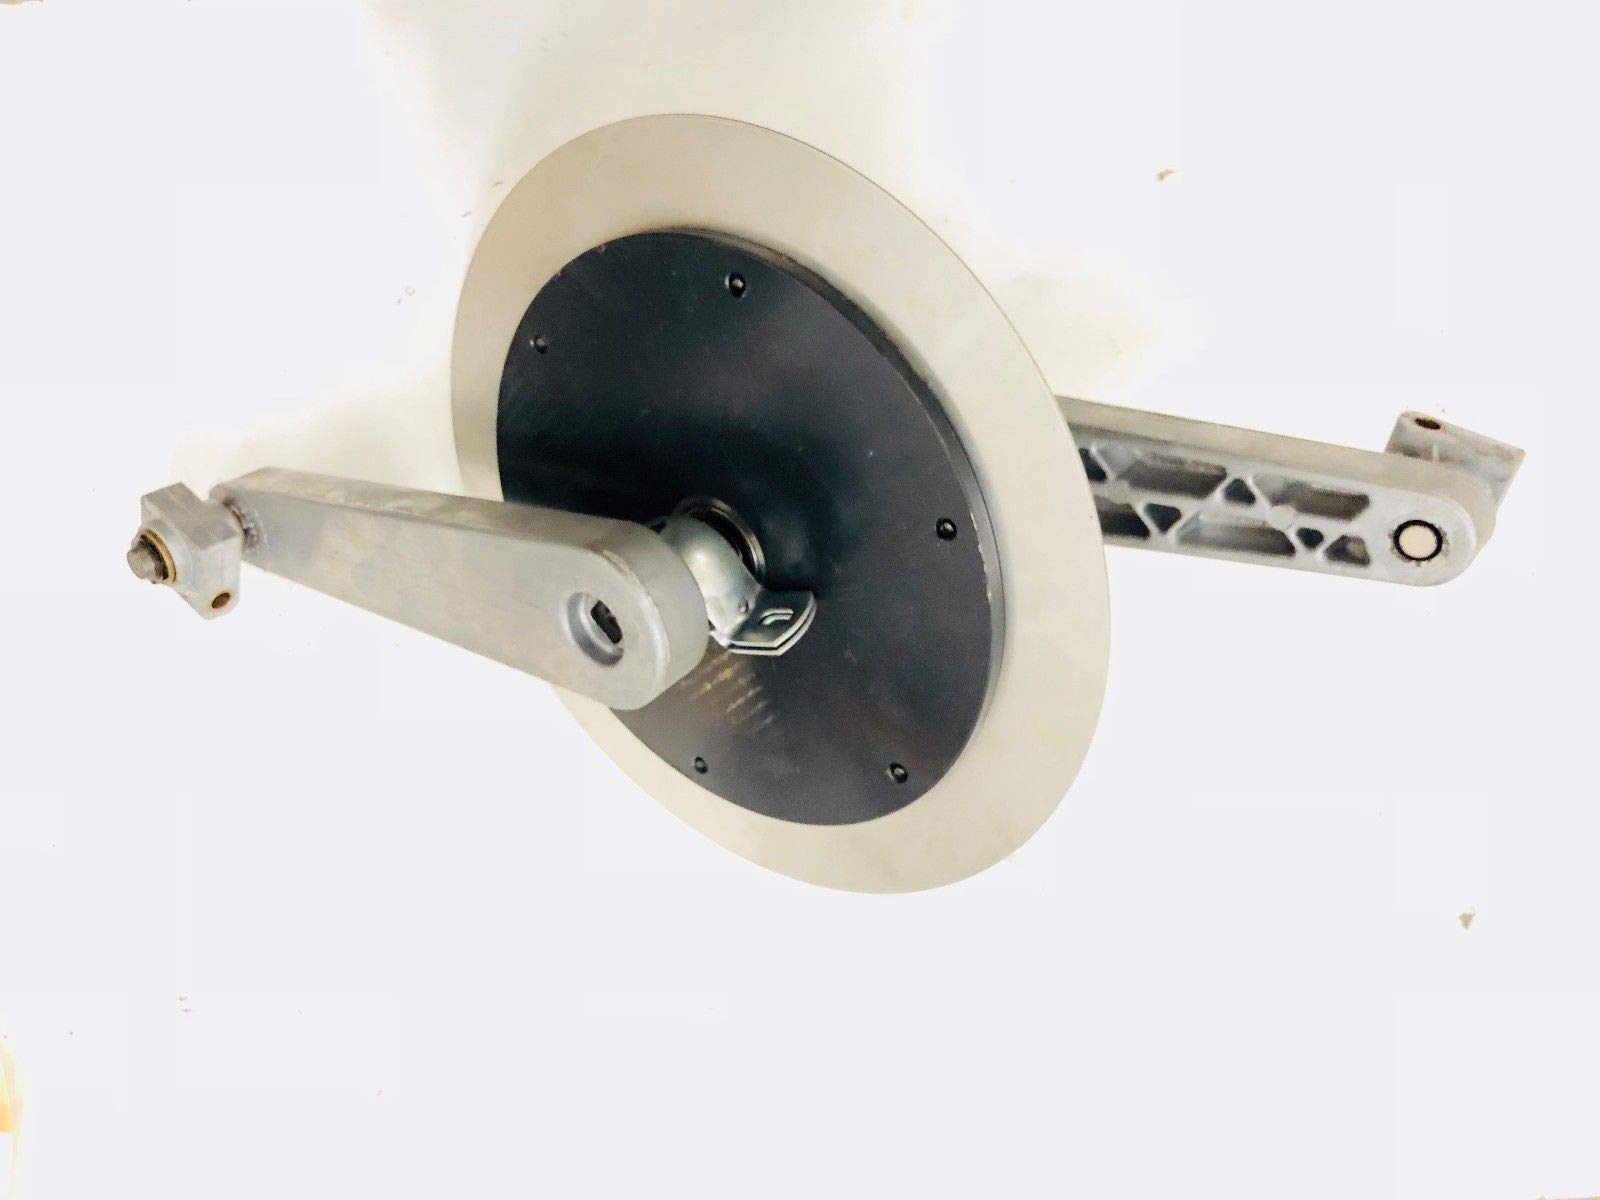 Magnetic Brake Flywheel Mechanism with Crank Arms